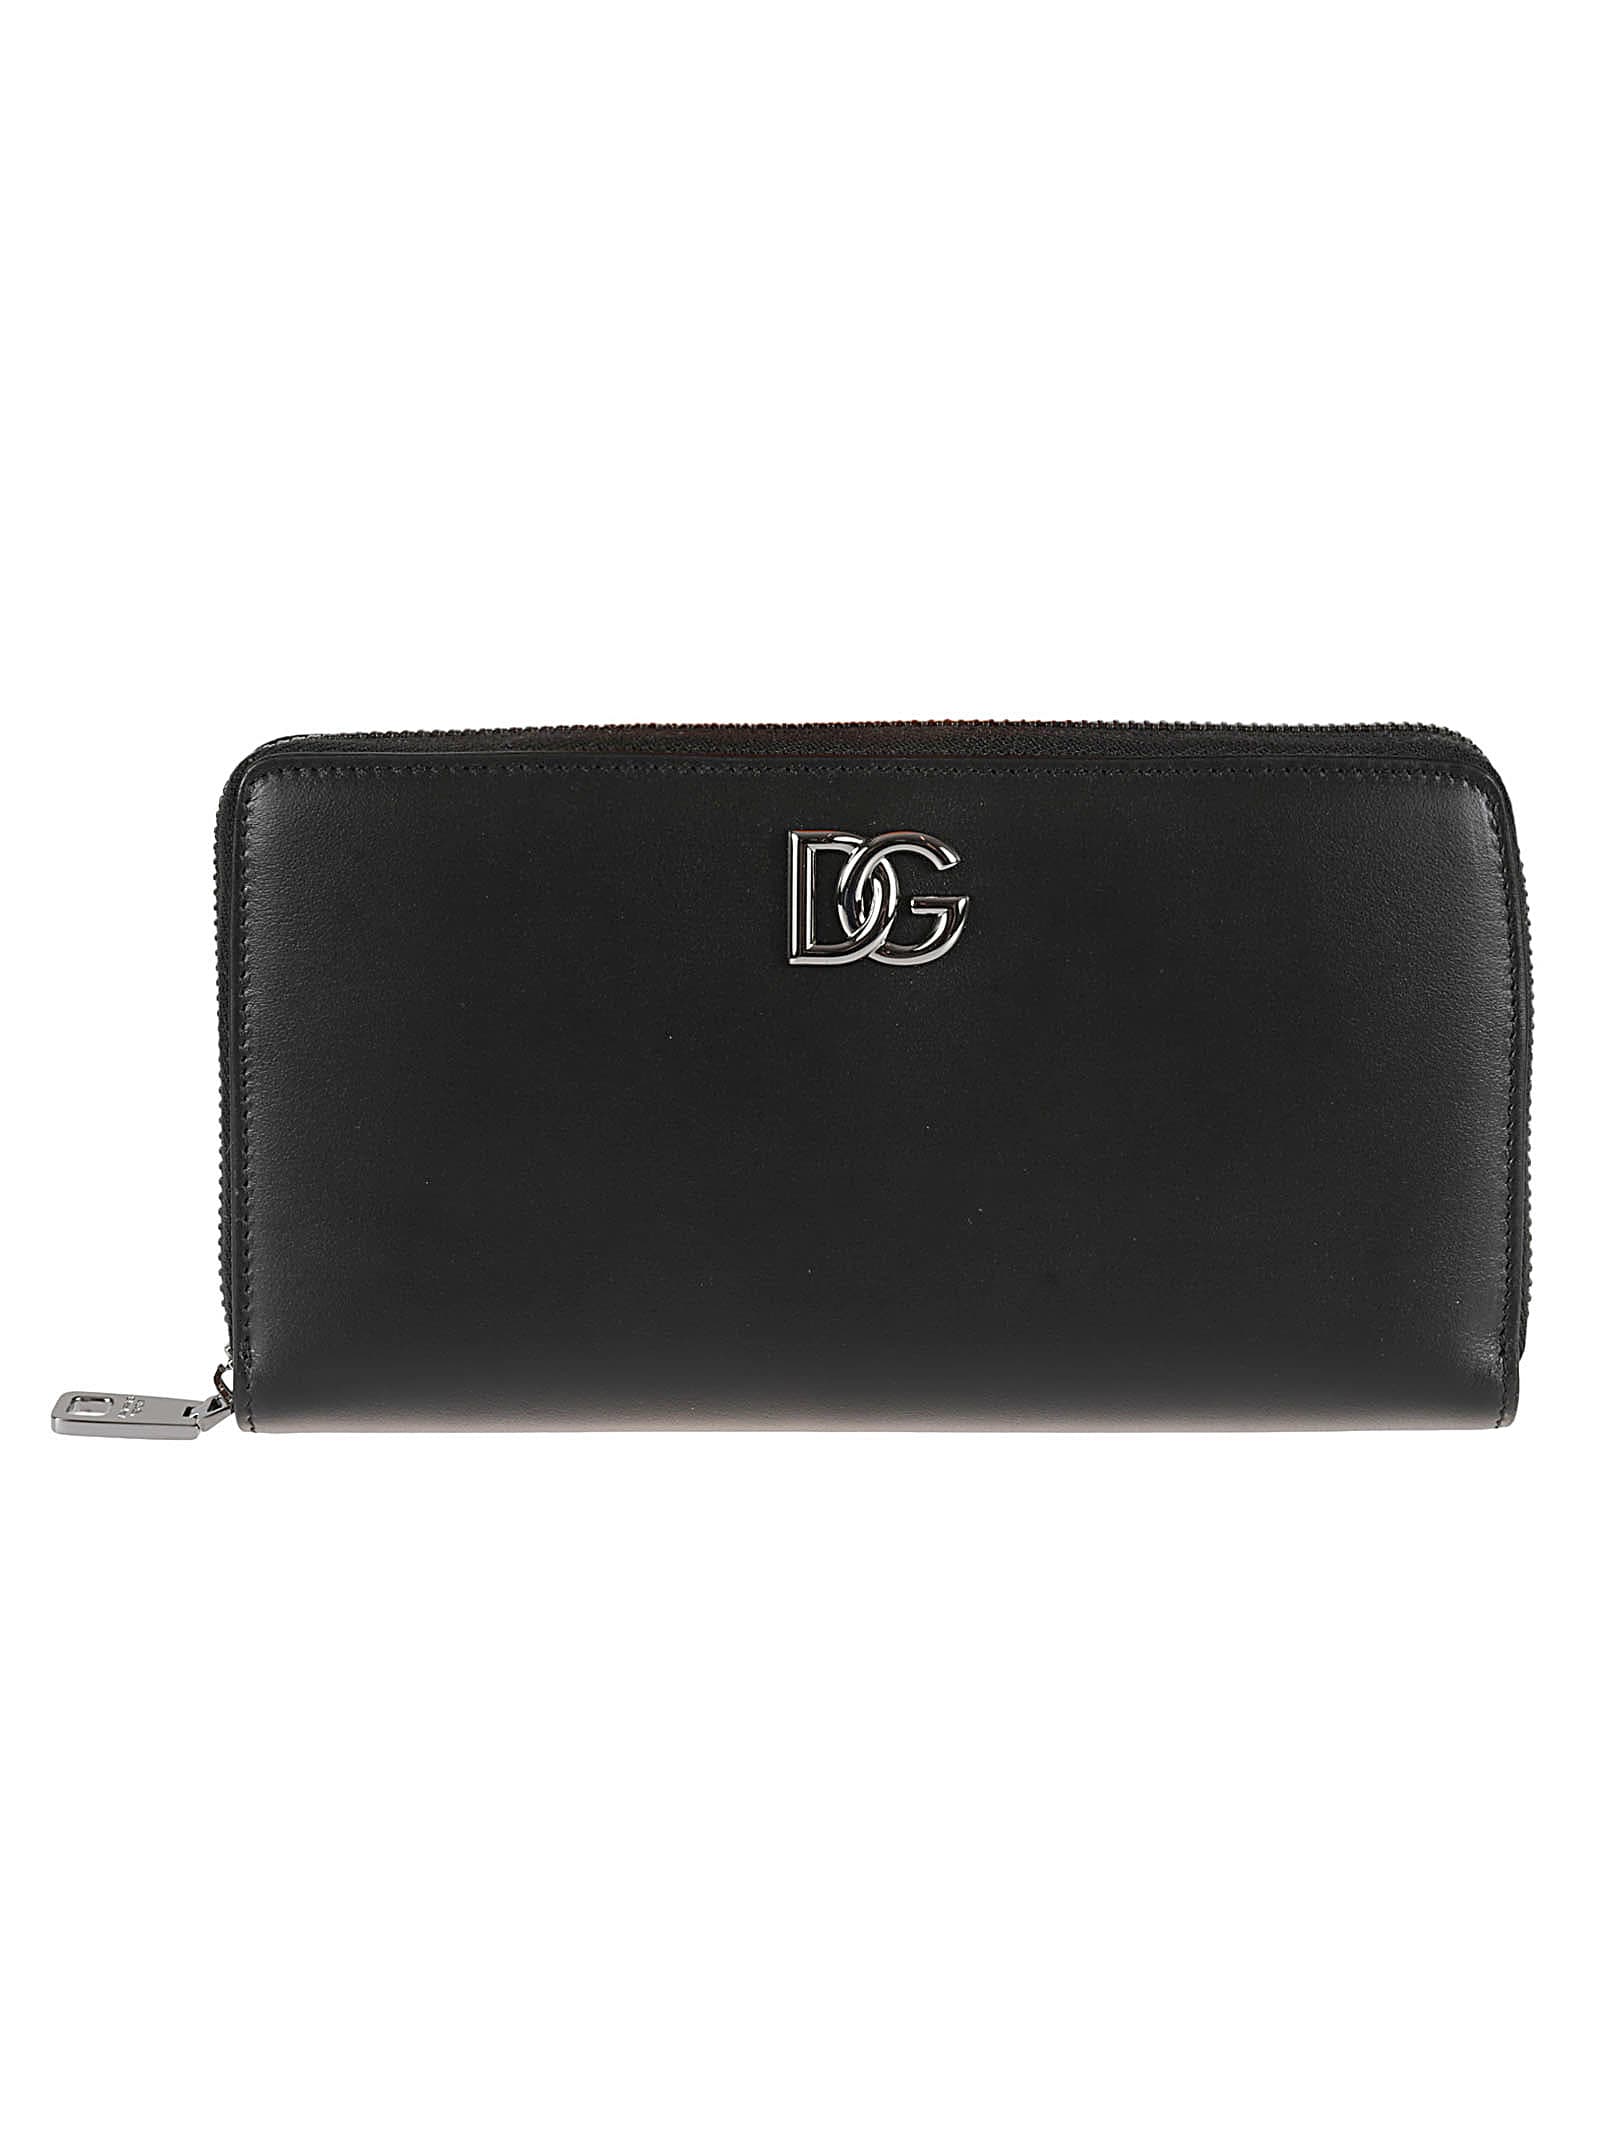 Dolce & Gabbana Logo Zip-around Wallet